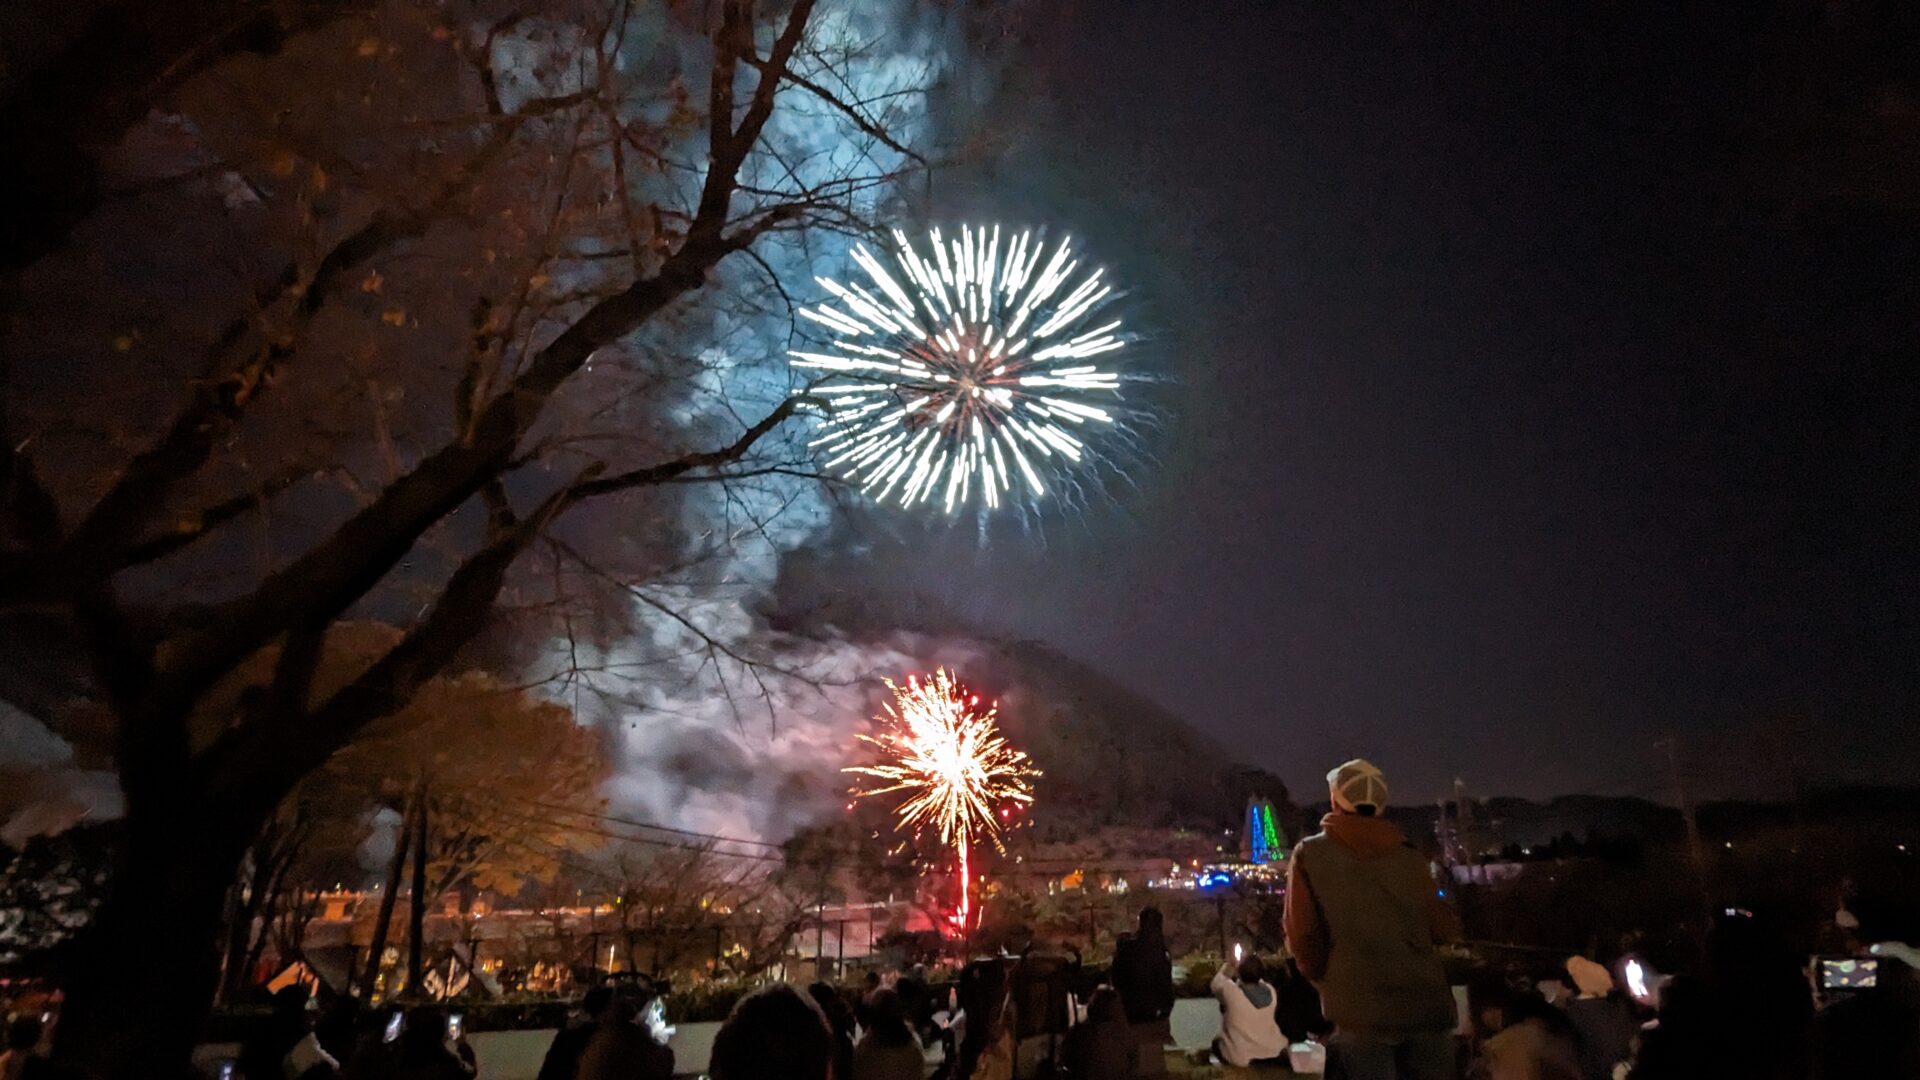 「つくい湖湖上祭」の花火を見てきました。